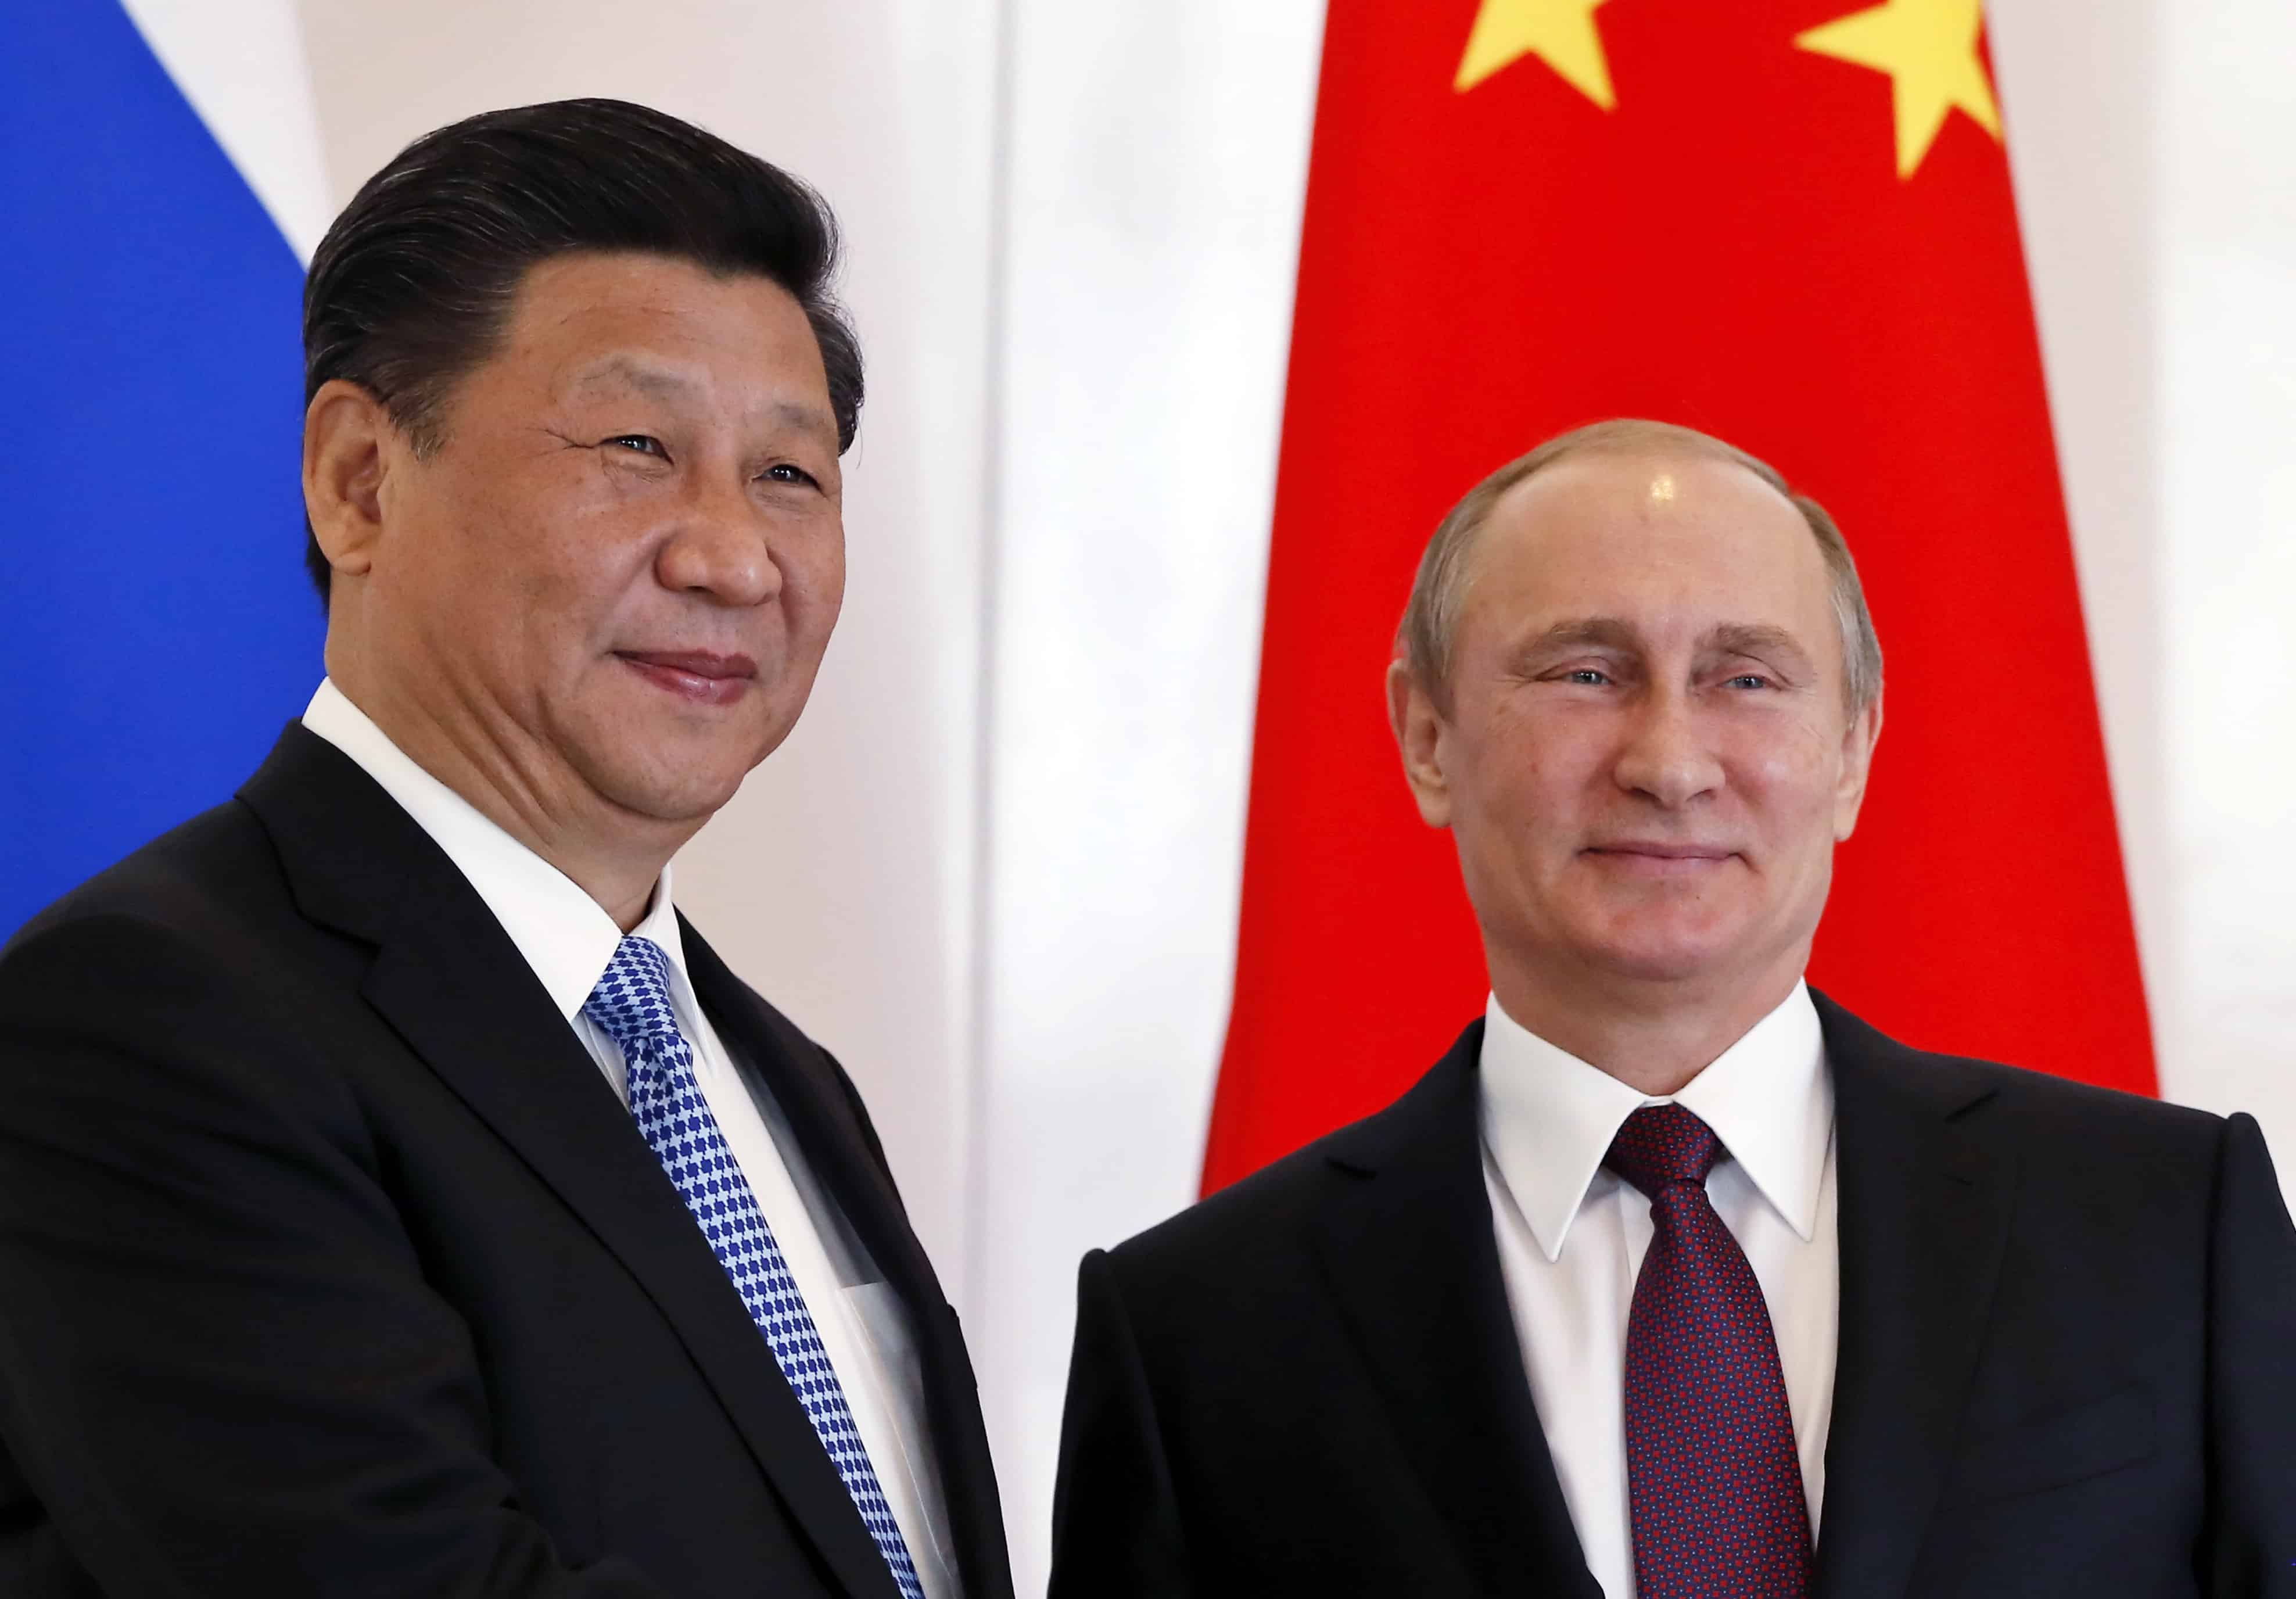 Các chuyên gia Trung Quốc nhận định, Bắc Kinh có một vị trí trong vấn đề Ukraine mà các nước phương Tây không thể có. Ảnh minh họa: EPA